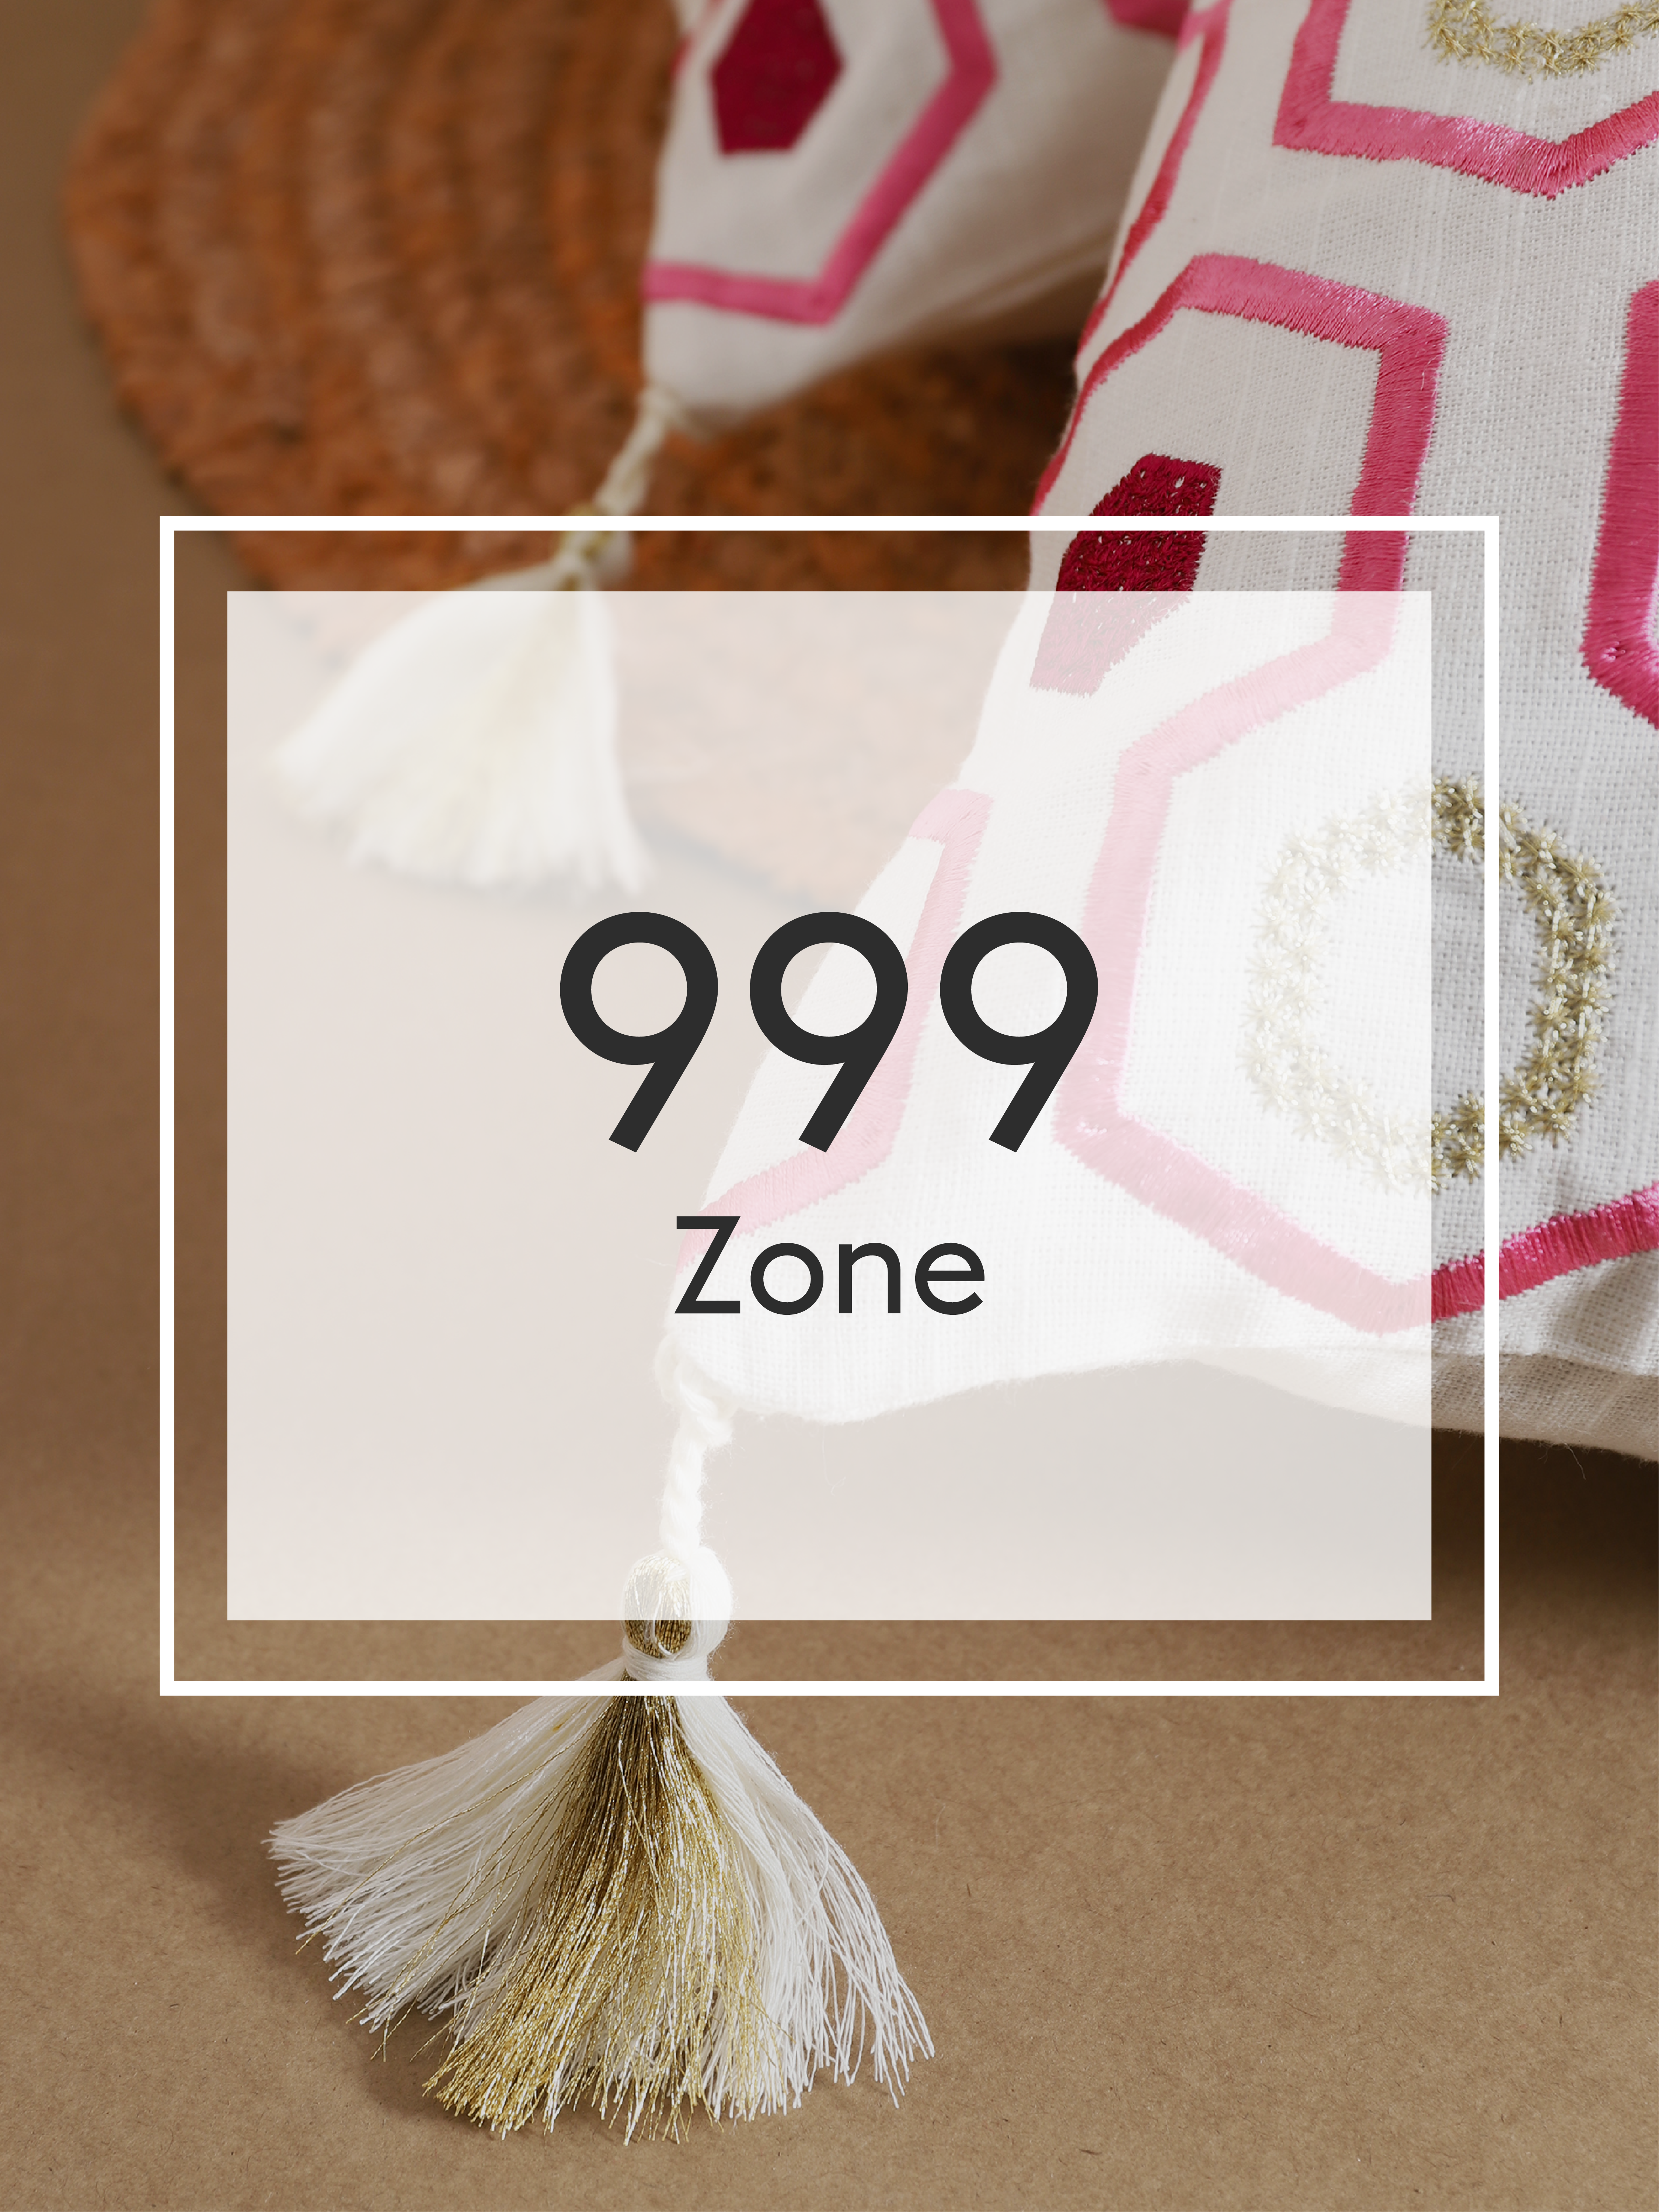 999 Zone